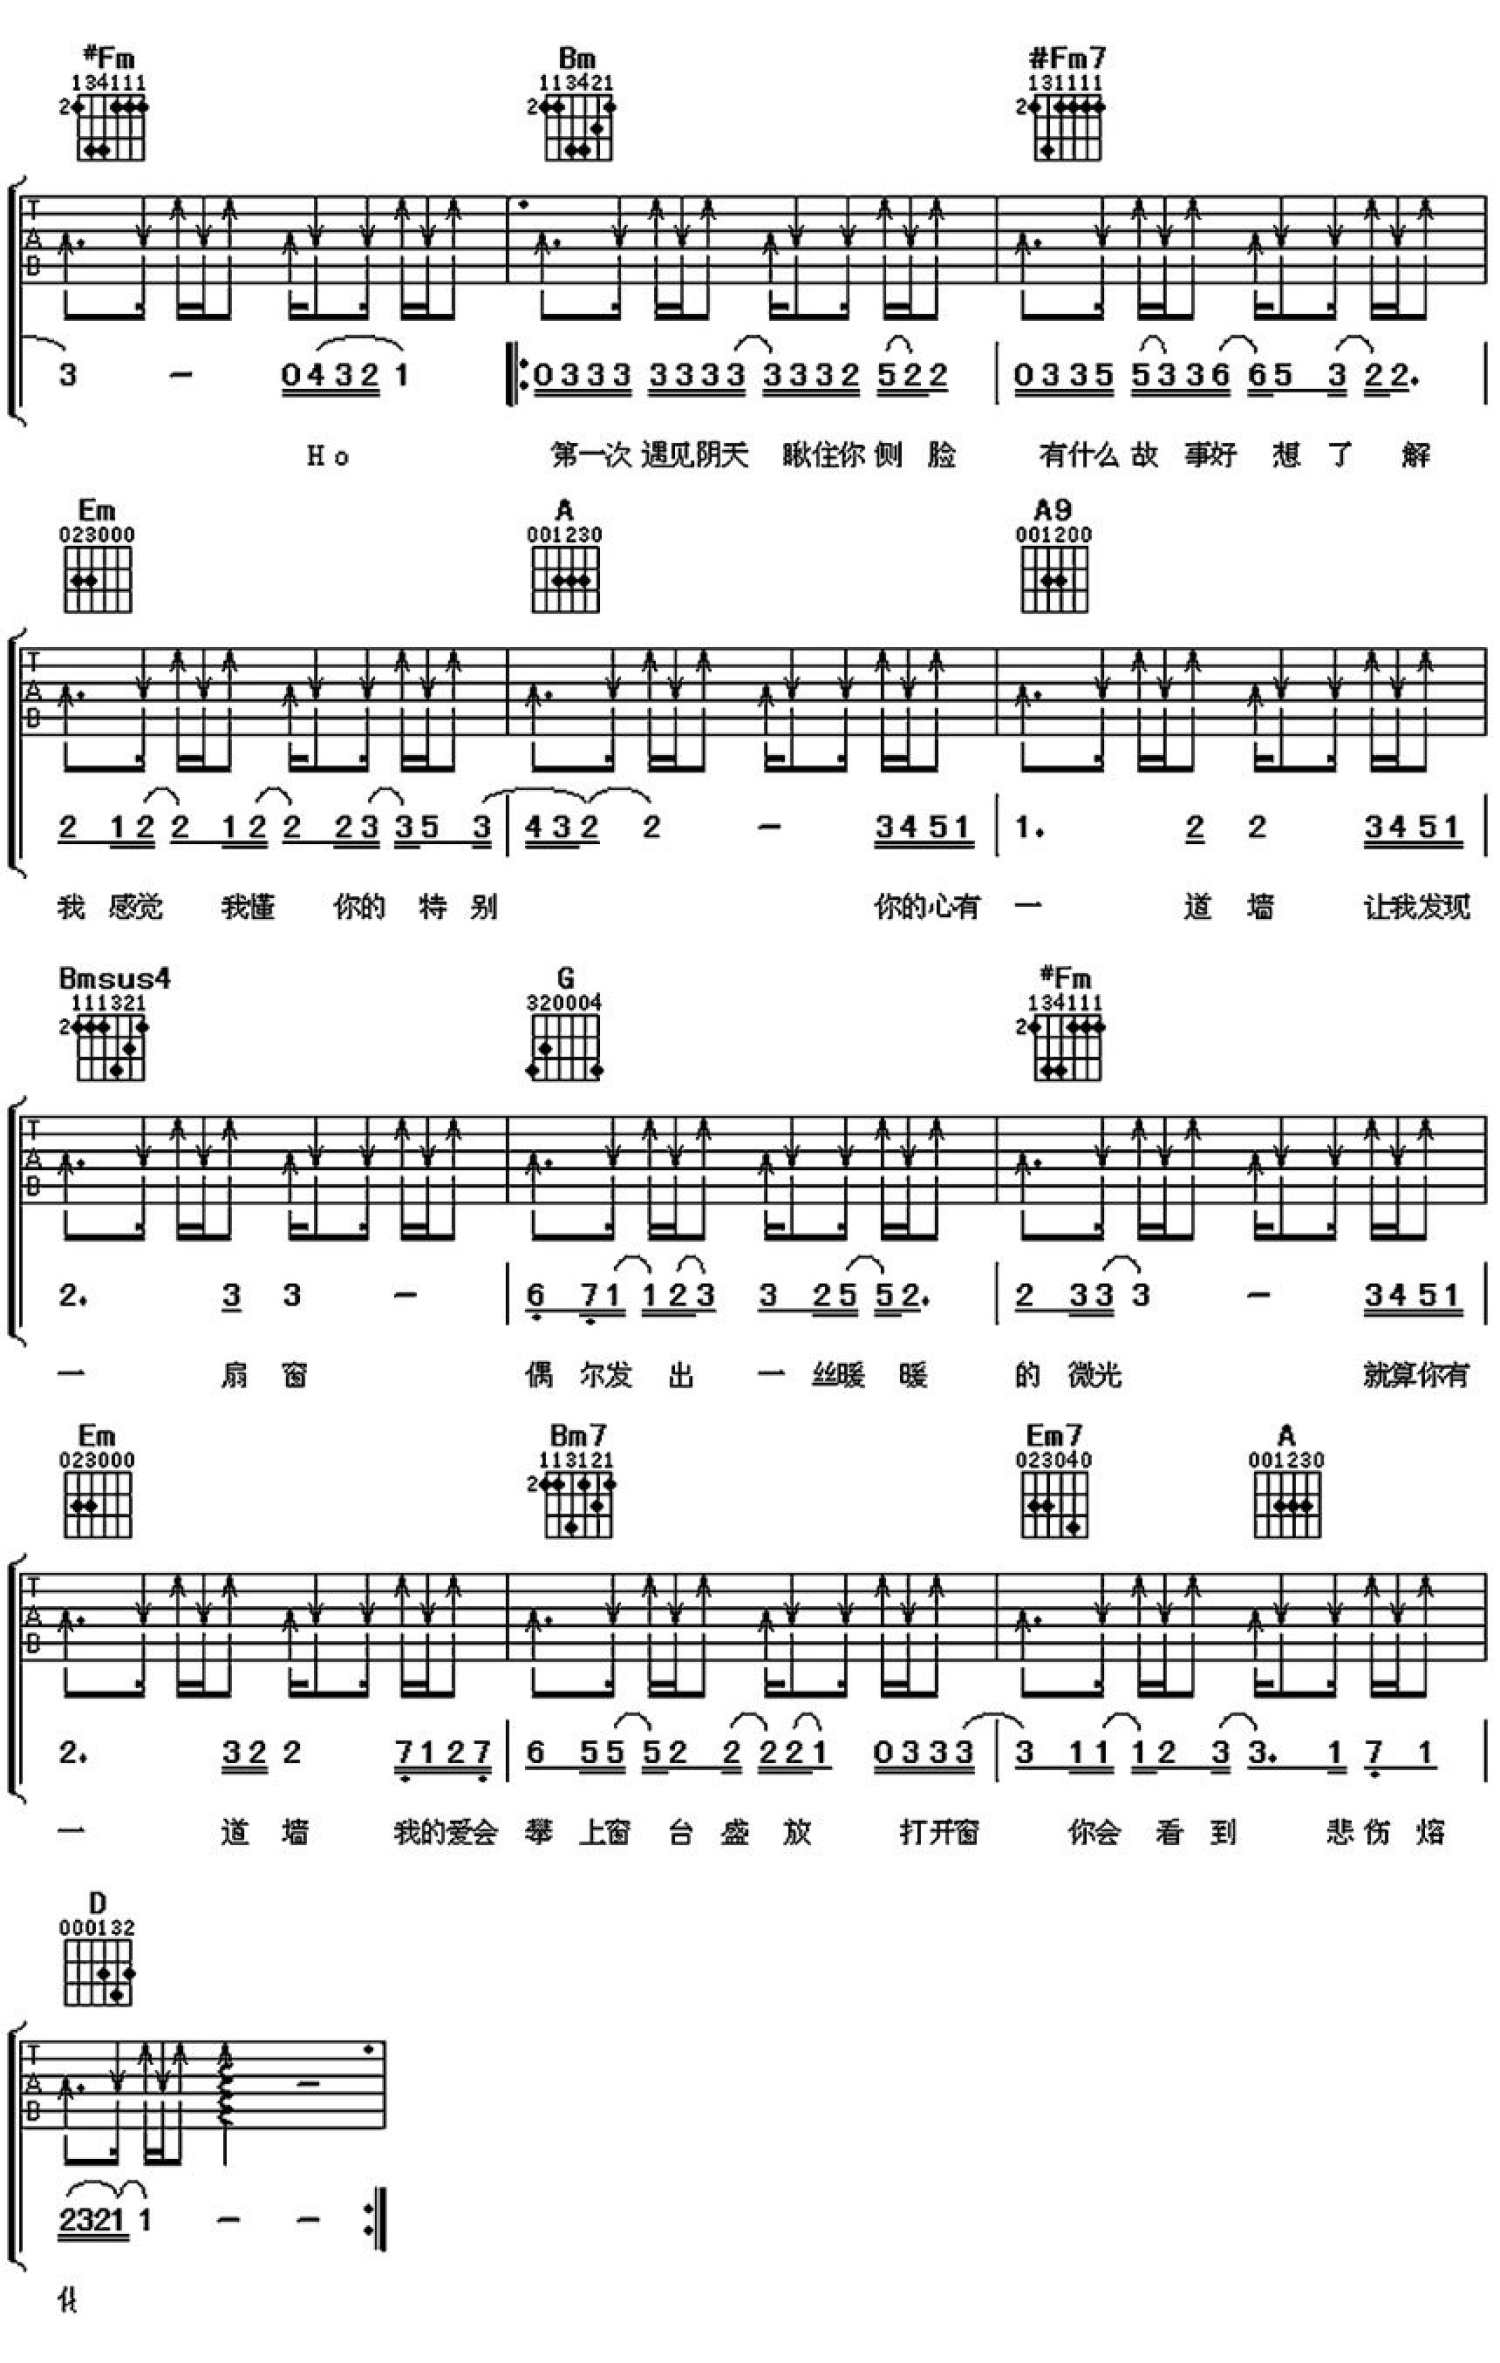 林俊杰《心墙》吉他谱 - A调合奏谱 - 石头音乐原版记谱 - 琴魂网